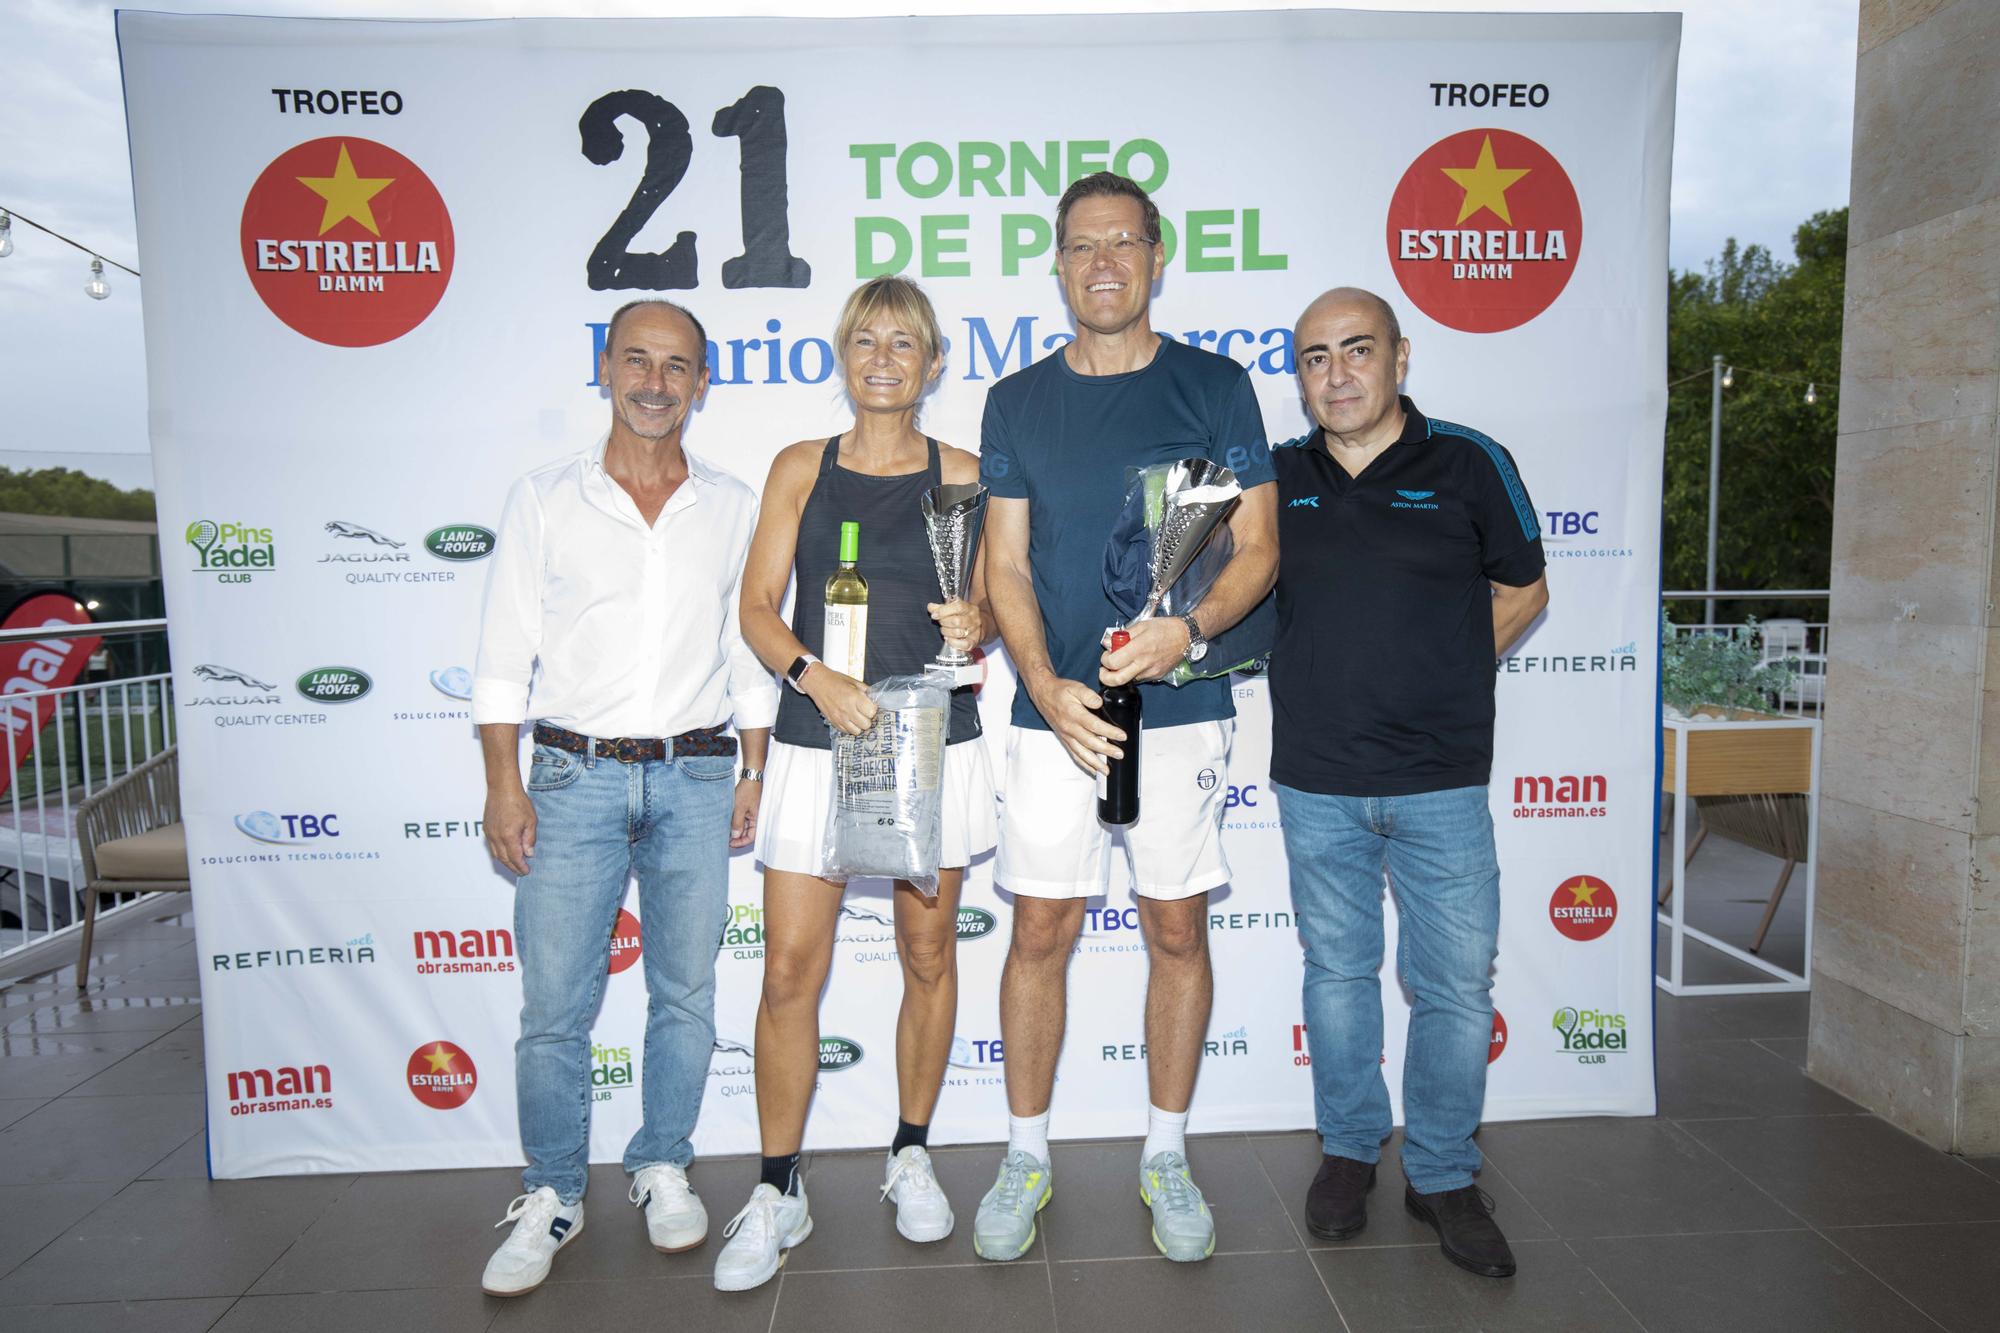 Entrega de premios: 21 Torneo de Pádel Diario de Mallorca, Trofeo Estrella Damm